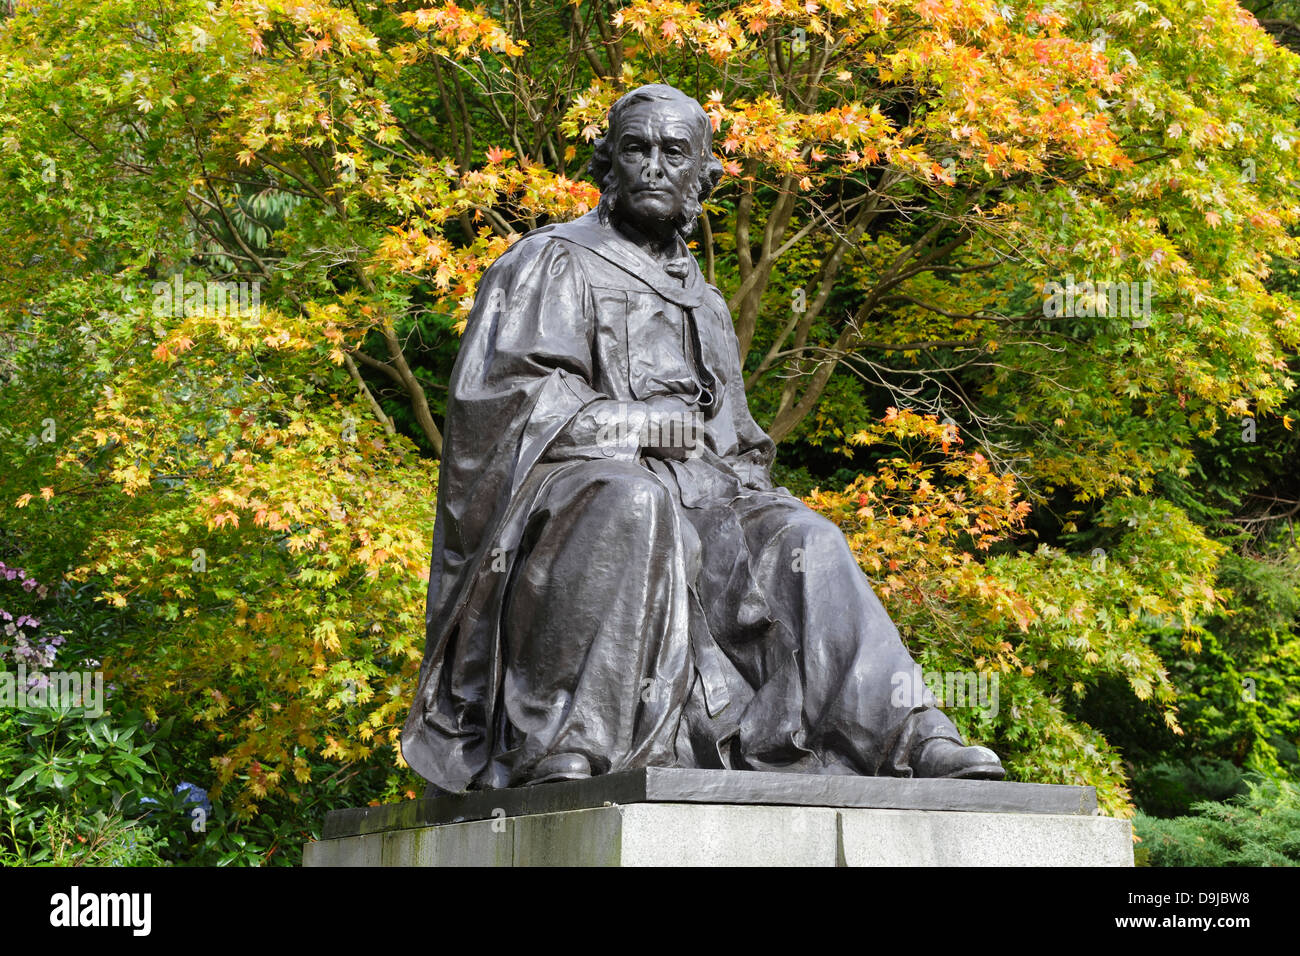 Monument en bronze de chirurgien Lord Joseph Lister par George Henry Paulin, parc de Kelvingrove, Glasgow, Écosse, Royaume-Uni Banque D'Images